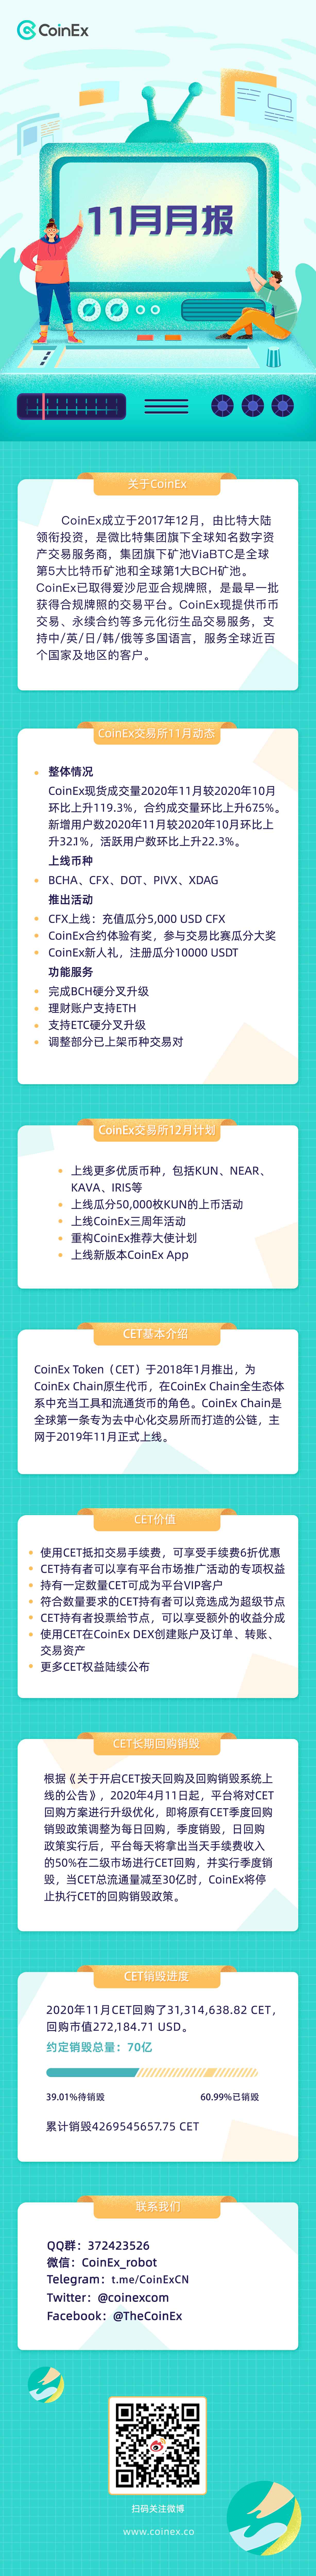 CoinEx11__CN.jpg